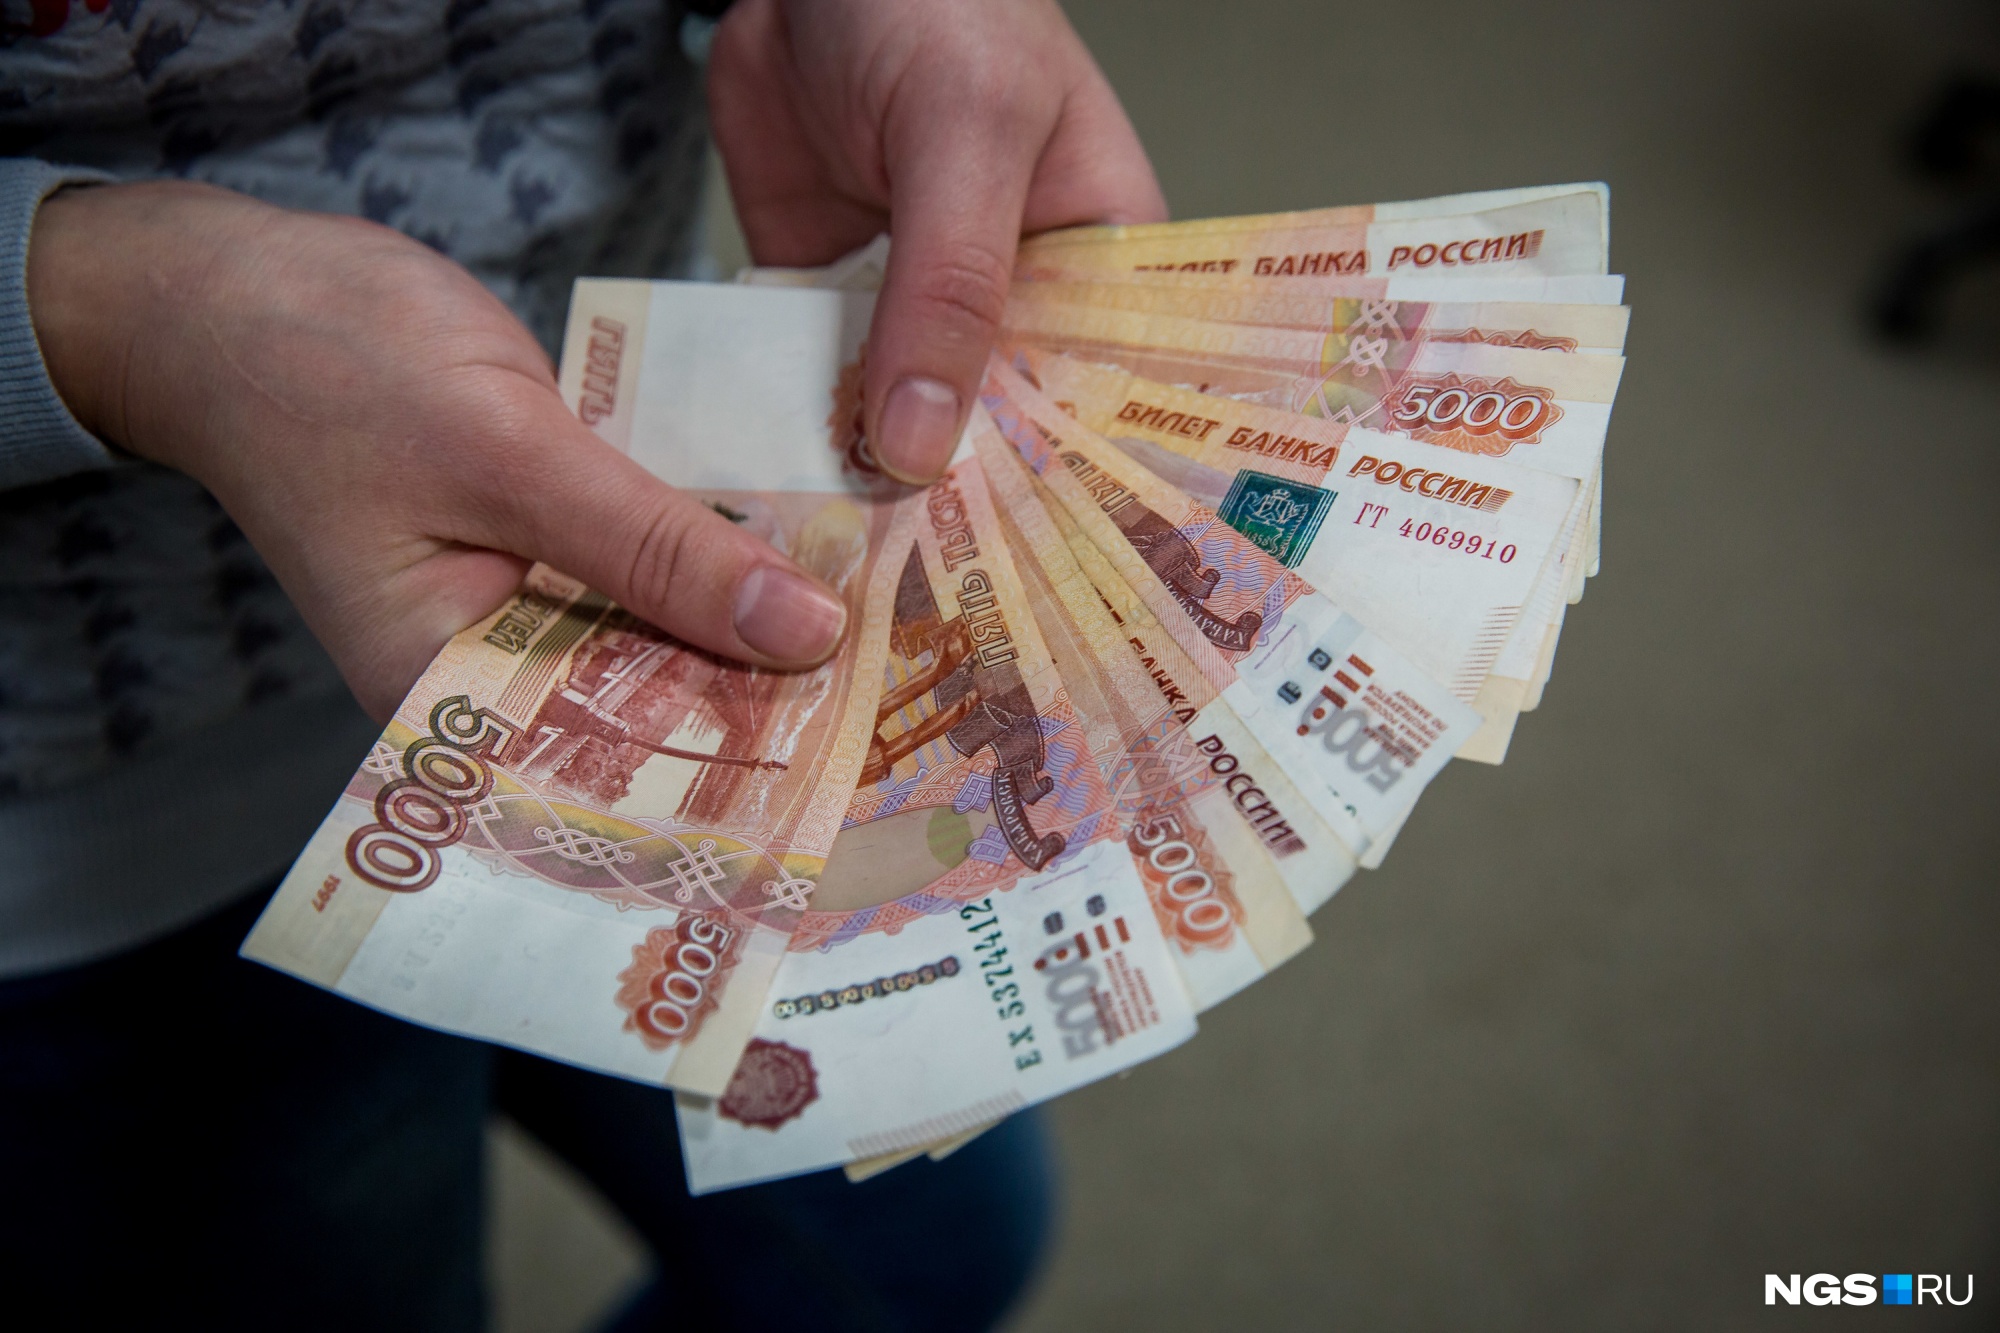 Власти Новокузнецка хотят взять два кредита на 28 млн рублей, чтобы погасить долги